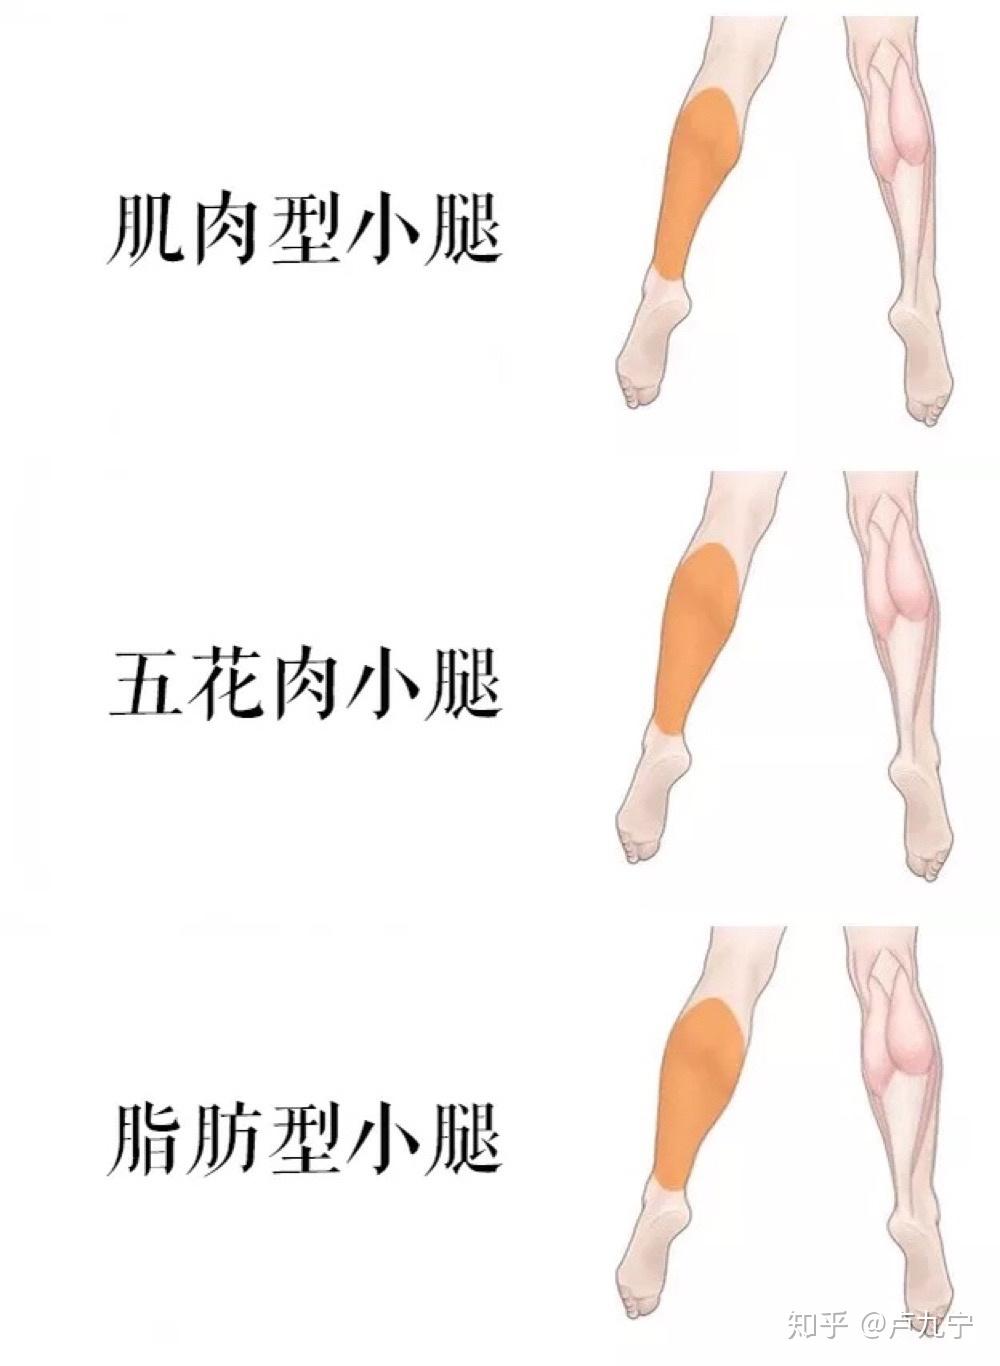 肥肉型,五花肉,肌肉型,你属于哪种腿型?